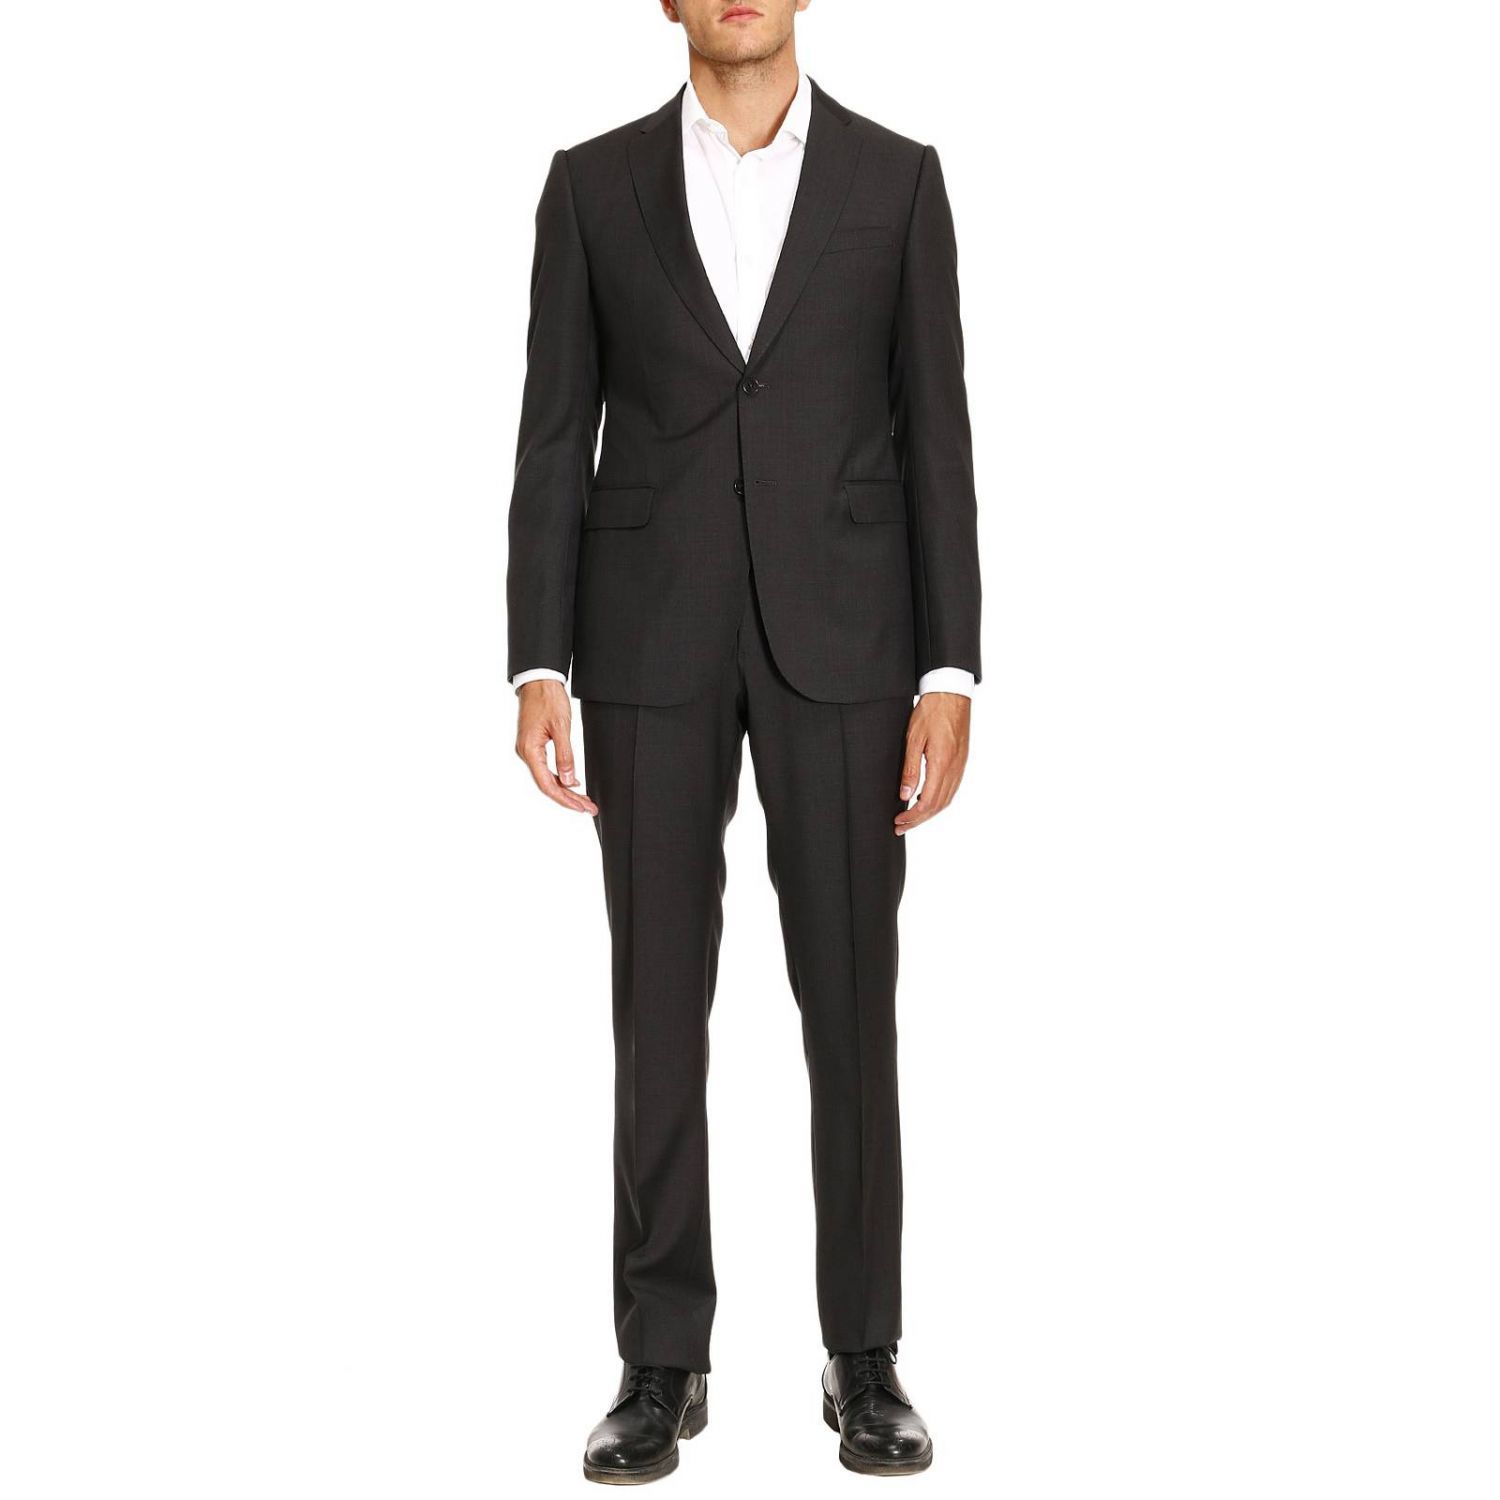 Armani Collezioni - Suit Suit Men Armani Collezioni - grey, Men's Suits ...